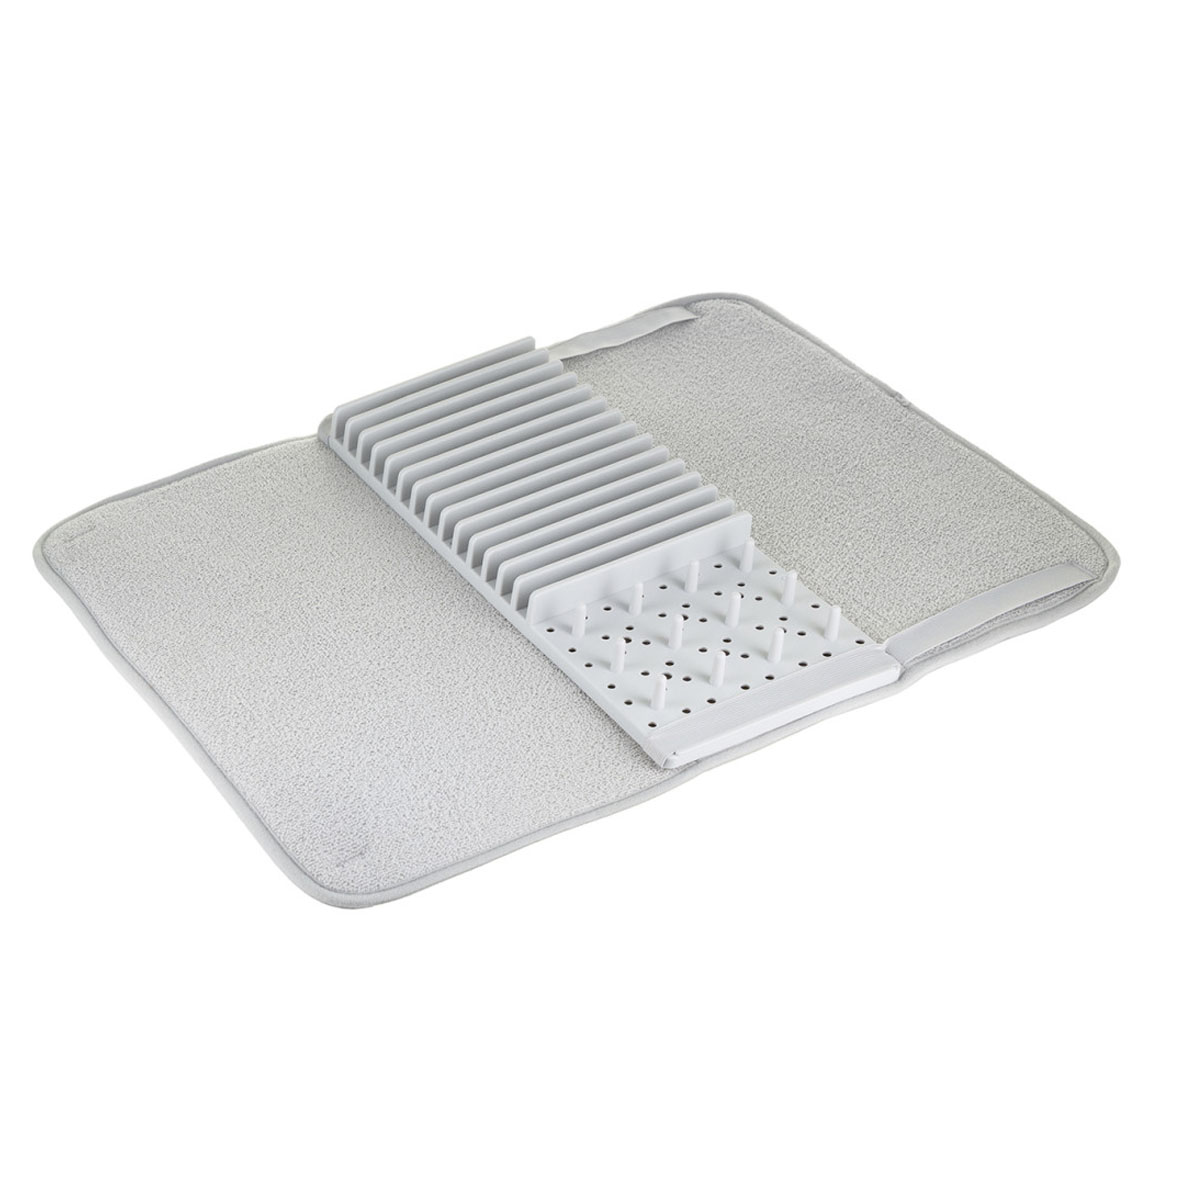 Коврик для сушки посуды Smart Solutions Bris коврик для сушки посуды из микрофибры рыжий кот